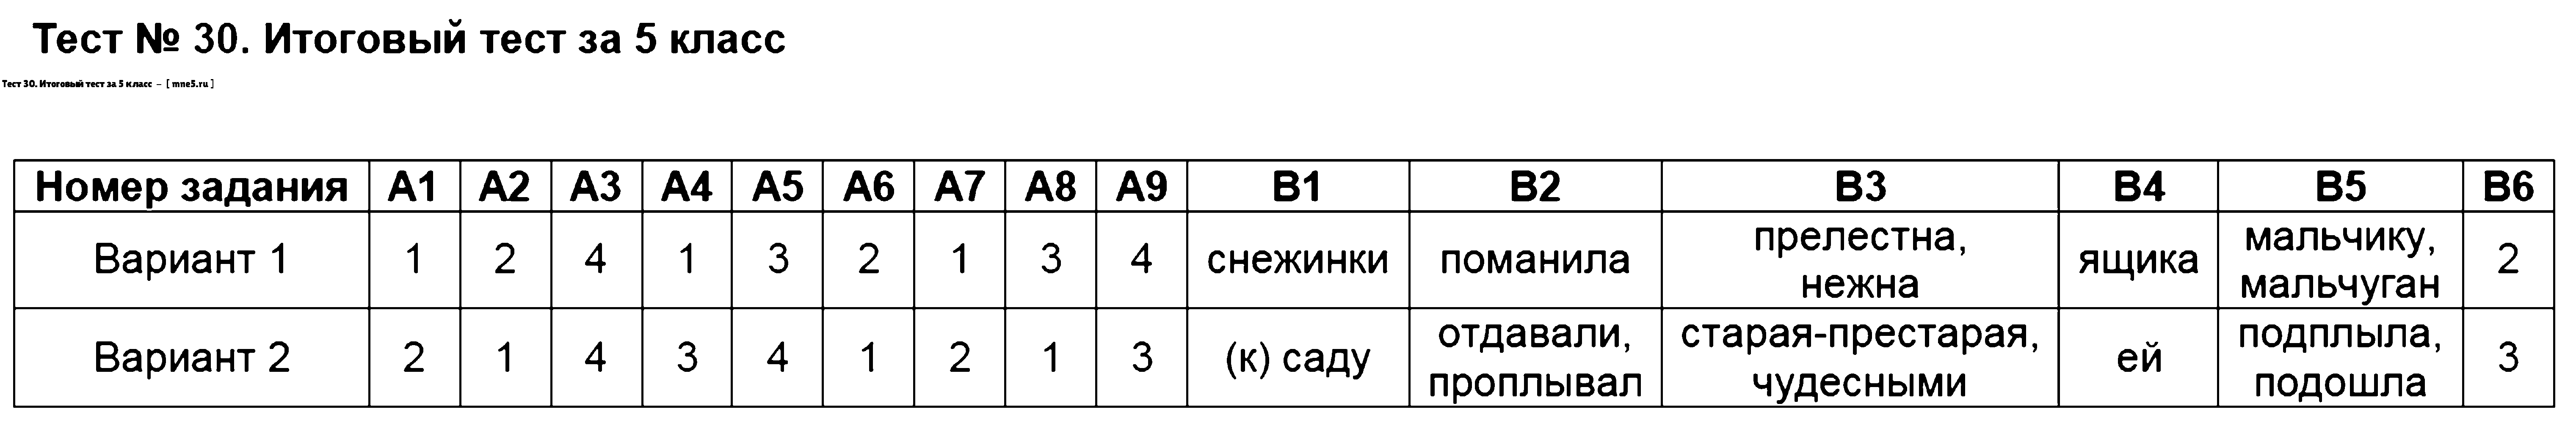 ГДЗ Русский язык 5 класс - Тест 30. Итоговый тест за 5 класс